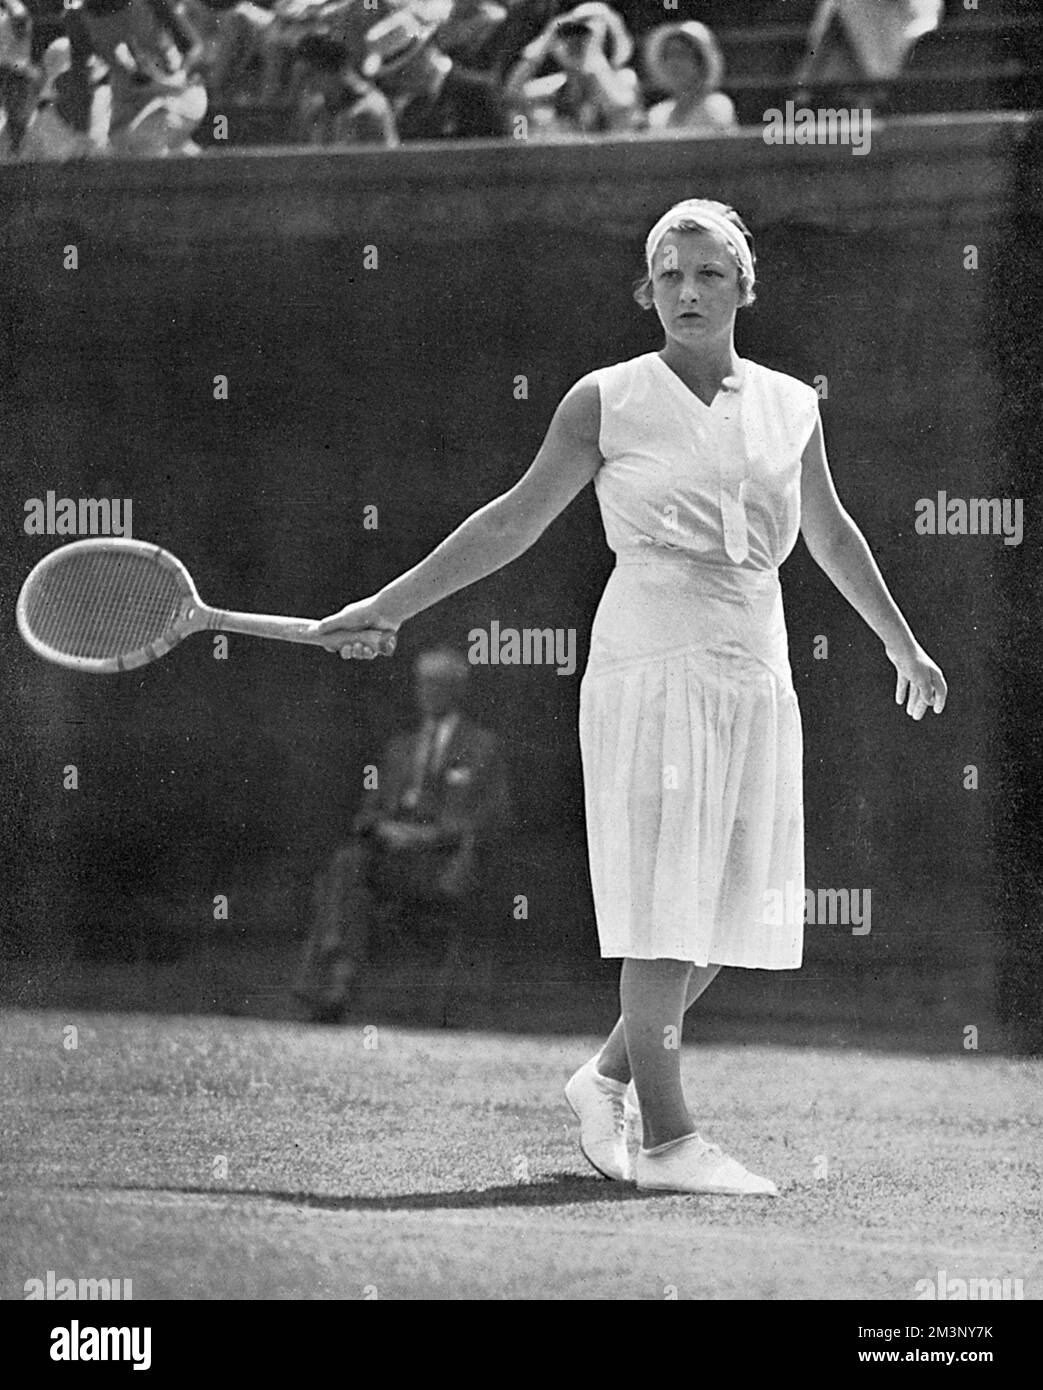 Helen Hull Jacobs (6. August, 1908. Juni 2, 1997), weltweit Nr. 1 amerikanische Tennisspielerin, die zehn Grand-Slam-Titel gewann. Abbildung: Gewinner des Finales der United States Women's Singles Championship in Forest Hills im Jahr 1932. Datum: 1932 Stockfoto